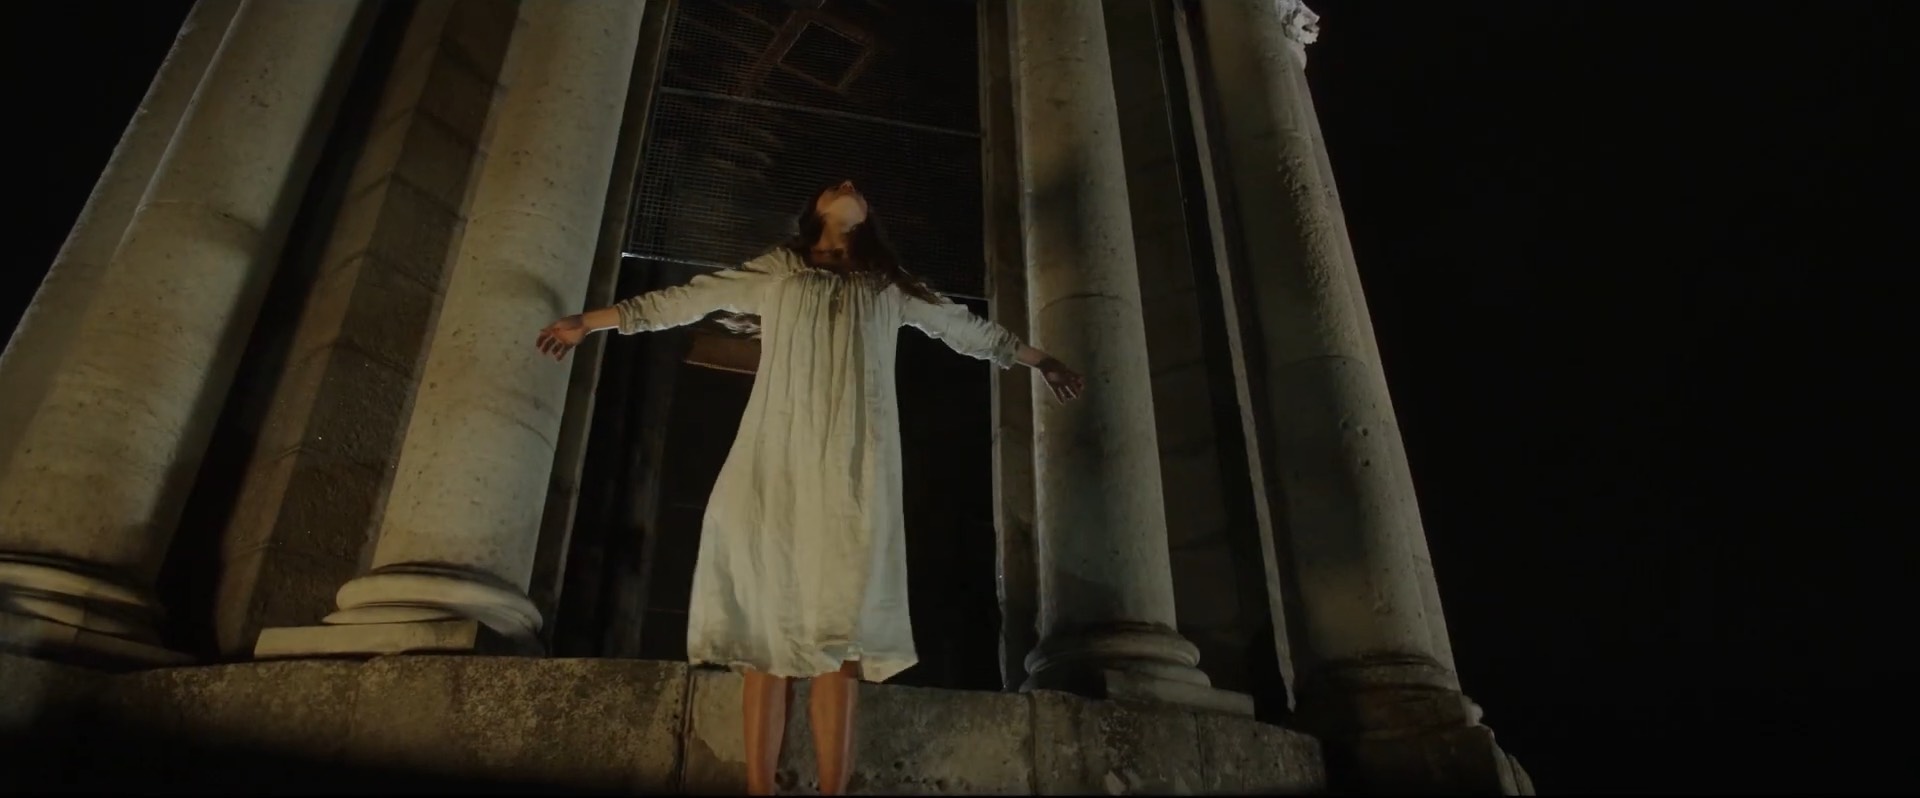 Chúa Quỷ Asmodeus: Con quỷ hùng mạnh và gian trá nhất địa ngục hiện hình trong phim kinh dị The Pope’s Exorcist! - Ảnh 3.